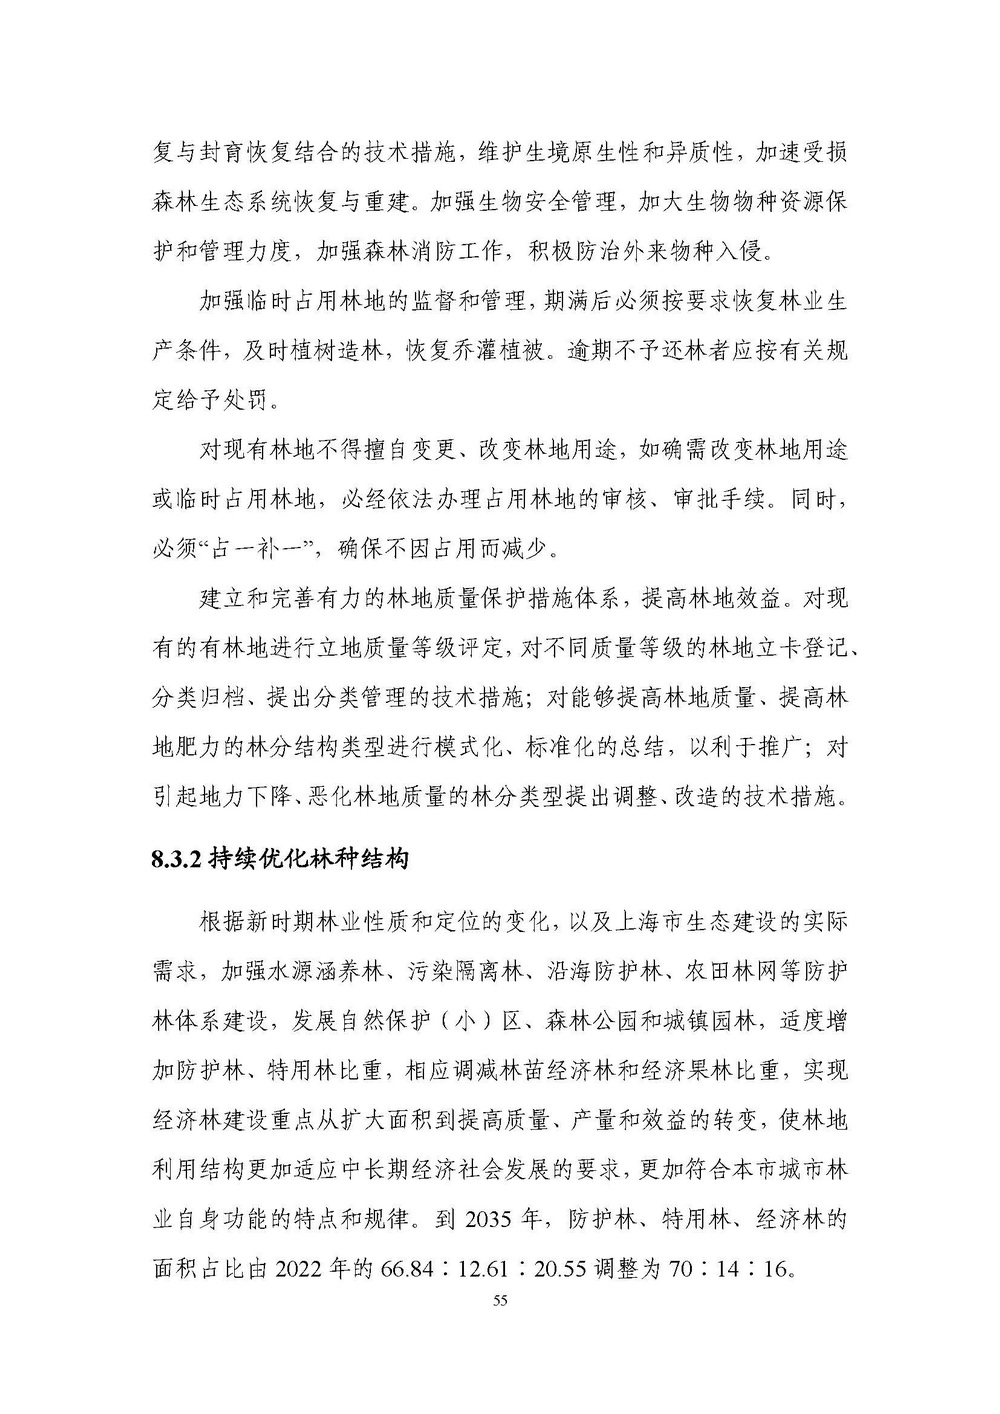 上海市森林和林地保护利用规划文本 公开稿 附图_页面_58.jpg